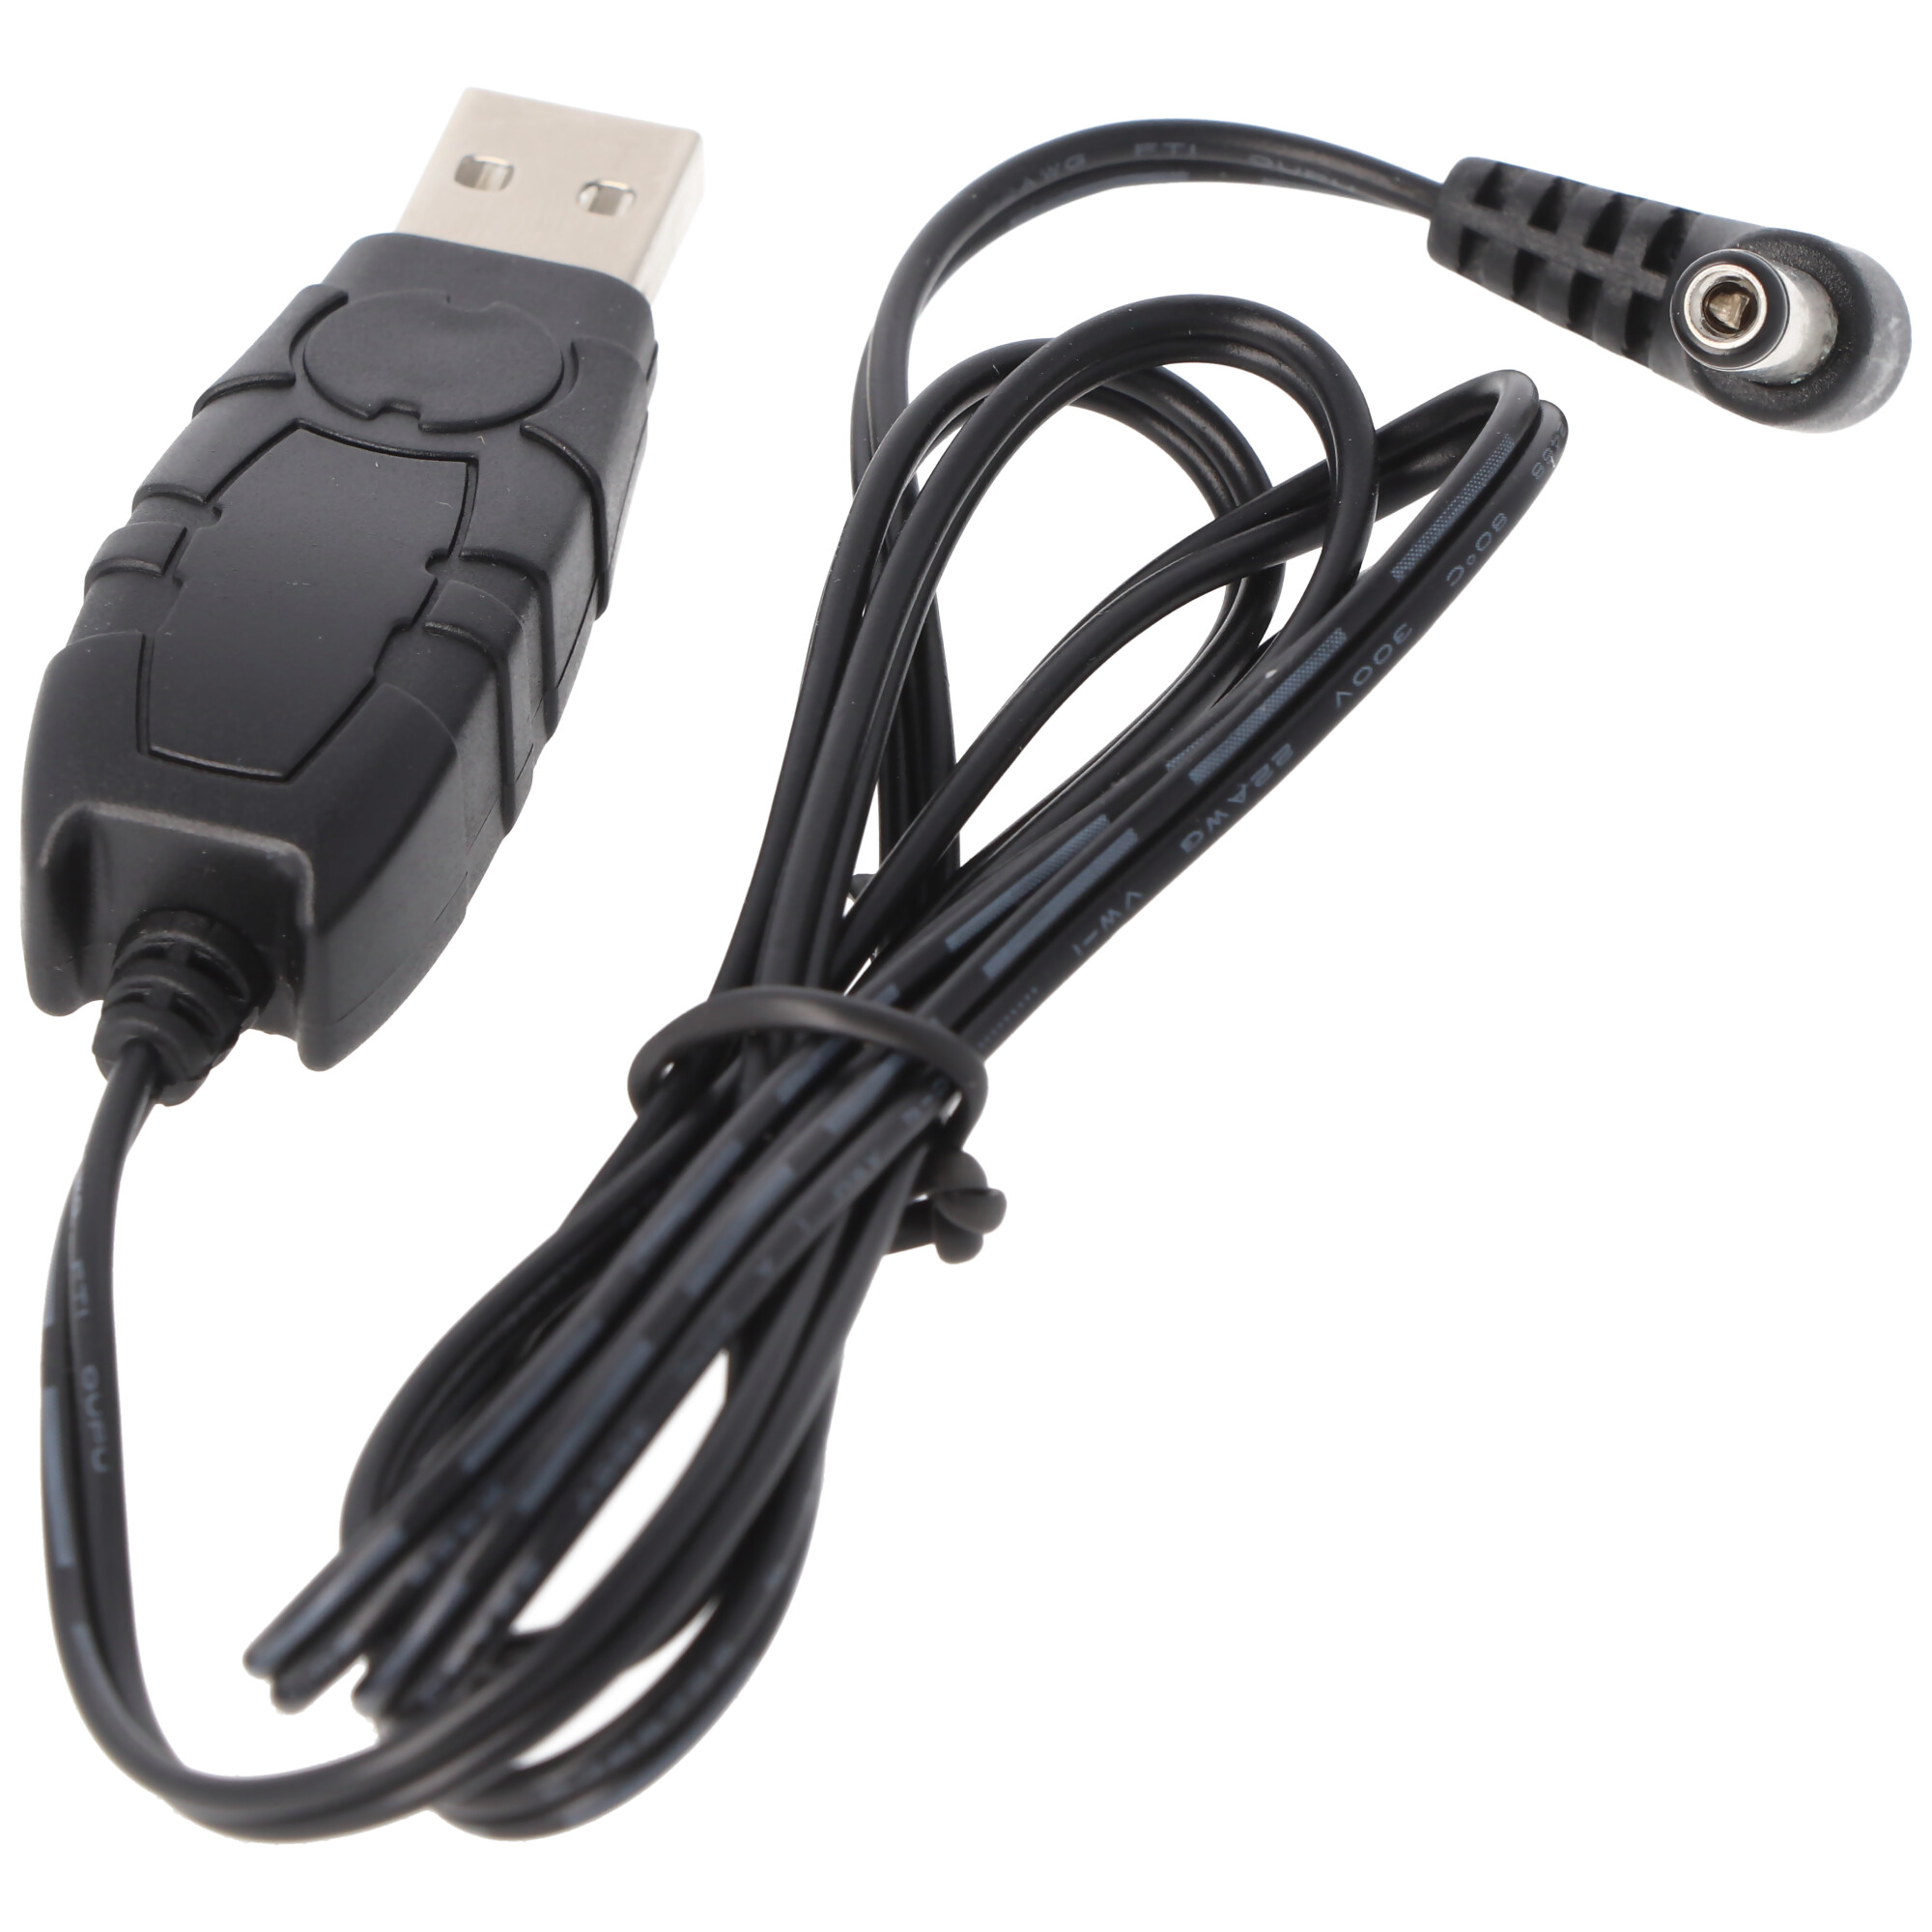 Spannungswandler 5V USB auf 12V für das Ladegerät 5101, Ladegerät  Basiseinheit, für DigiCam, Camcorder, Ladegeräte